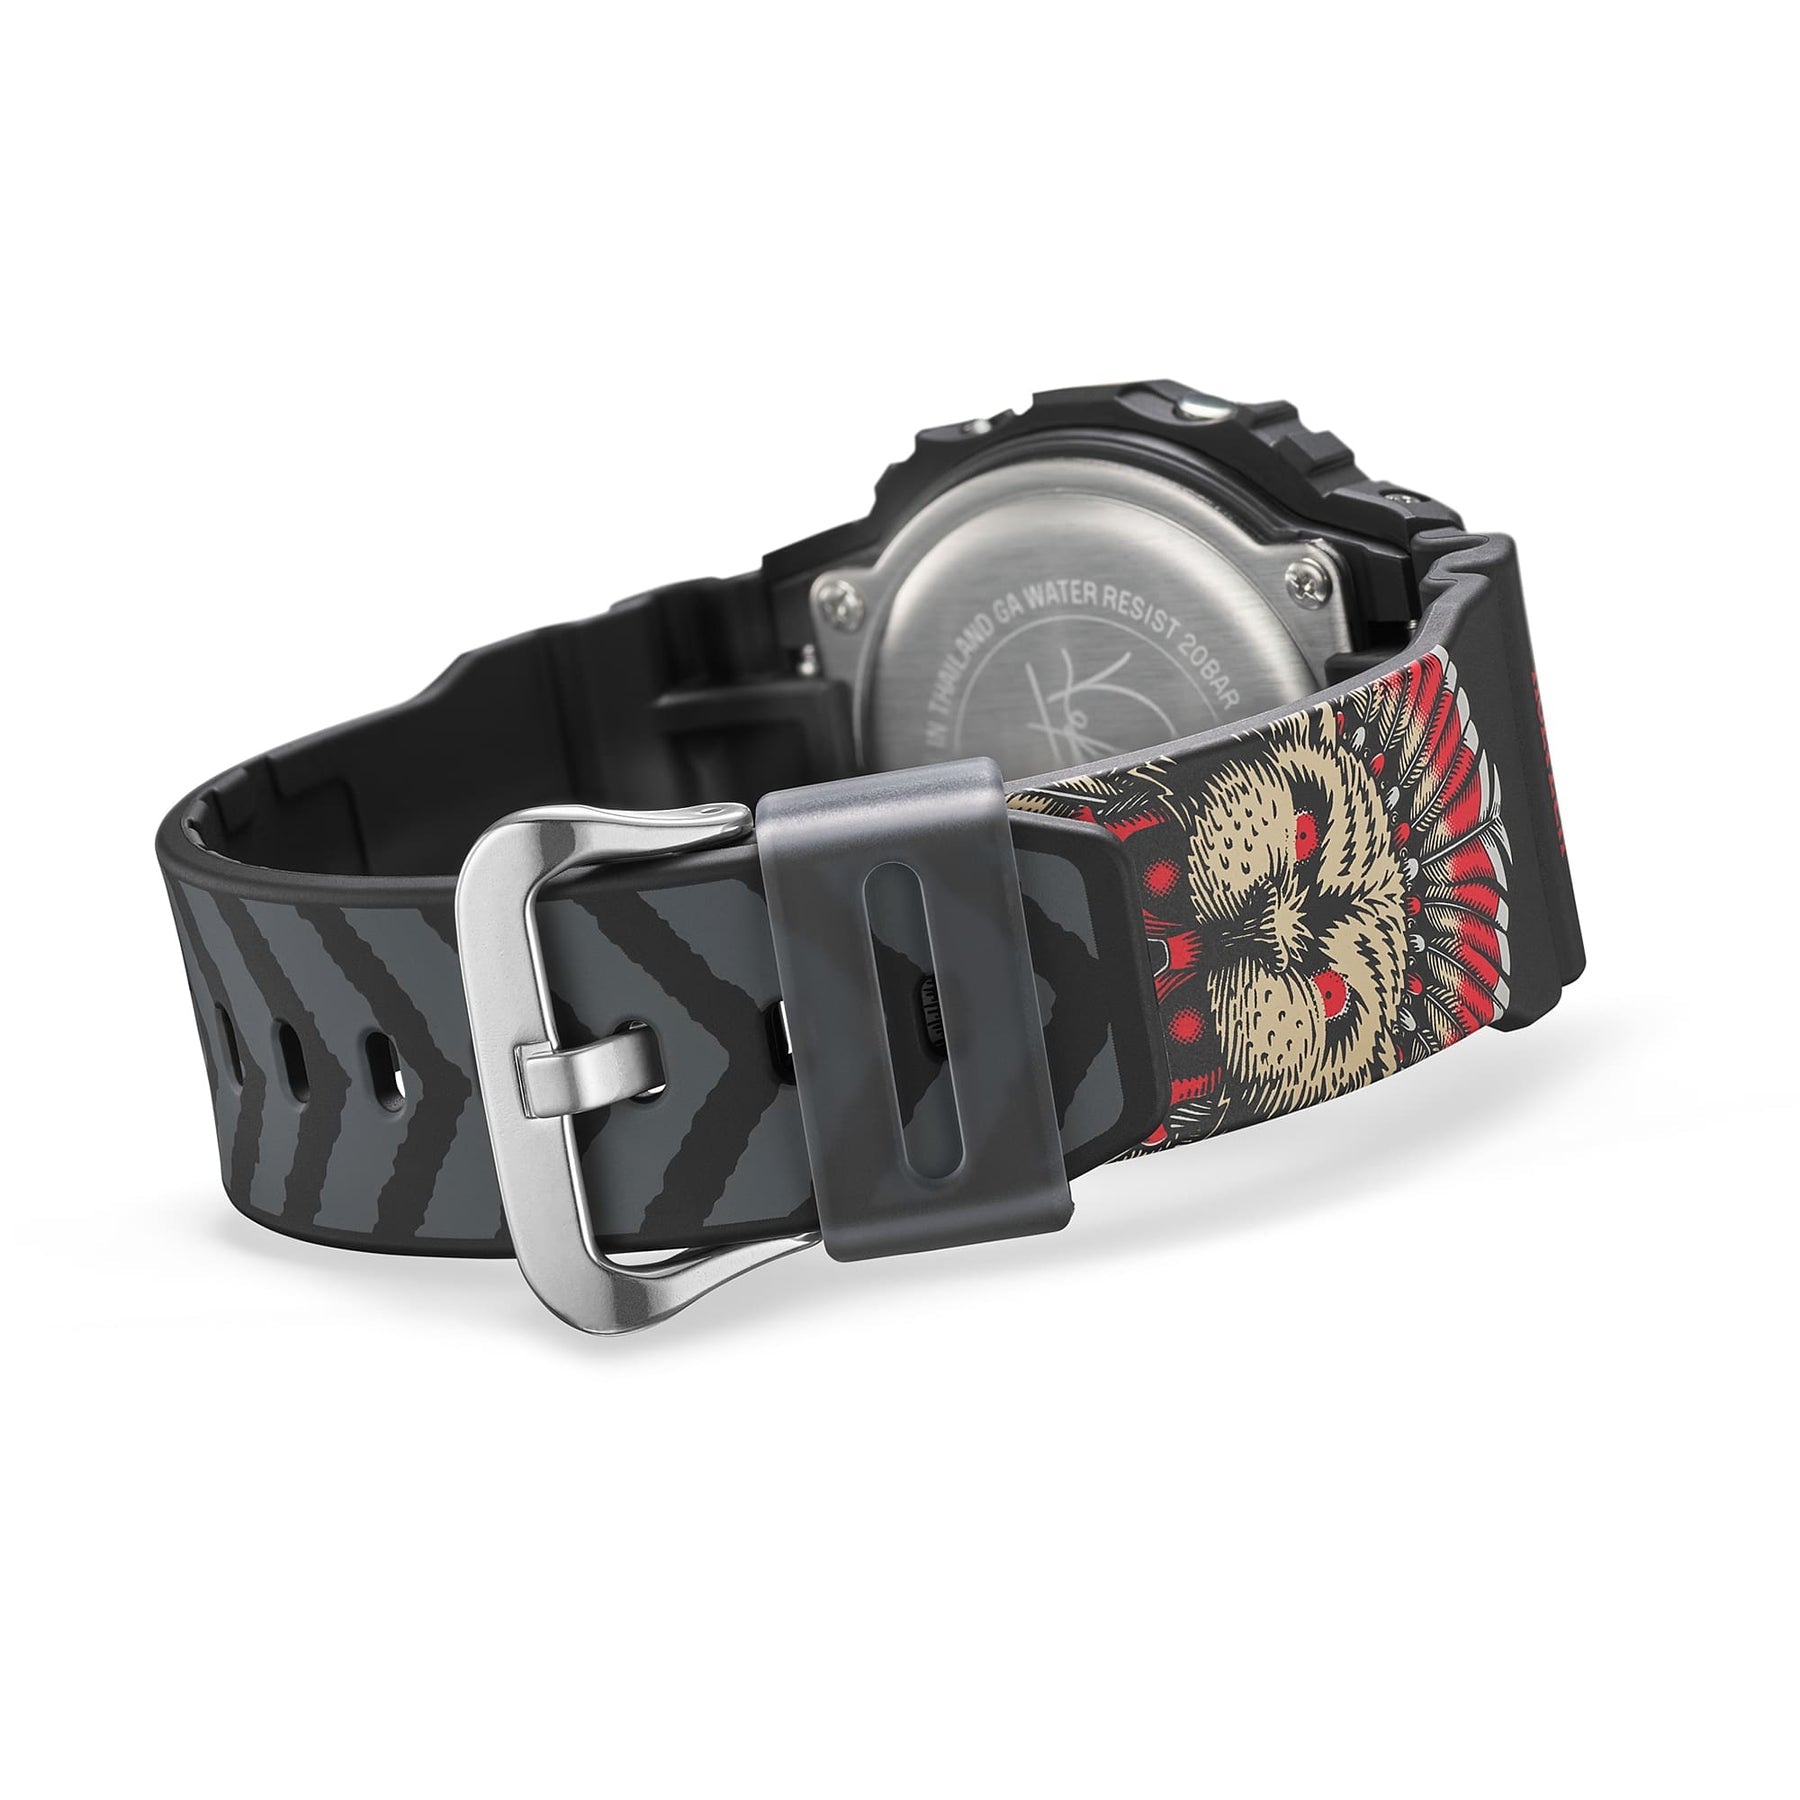 G-Shock Kelvin Hoefler Watch DW5600KH-1D